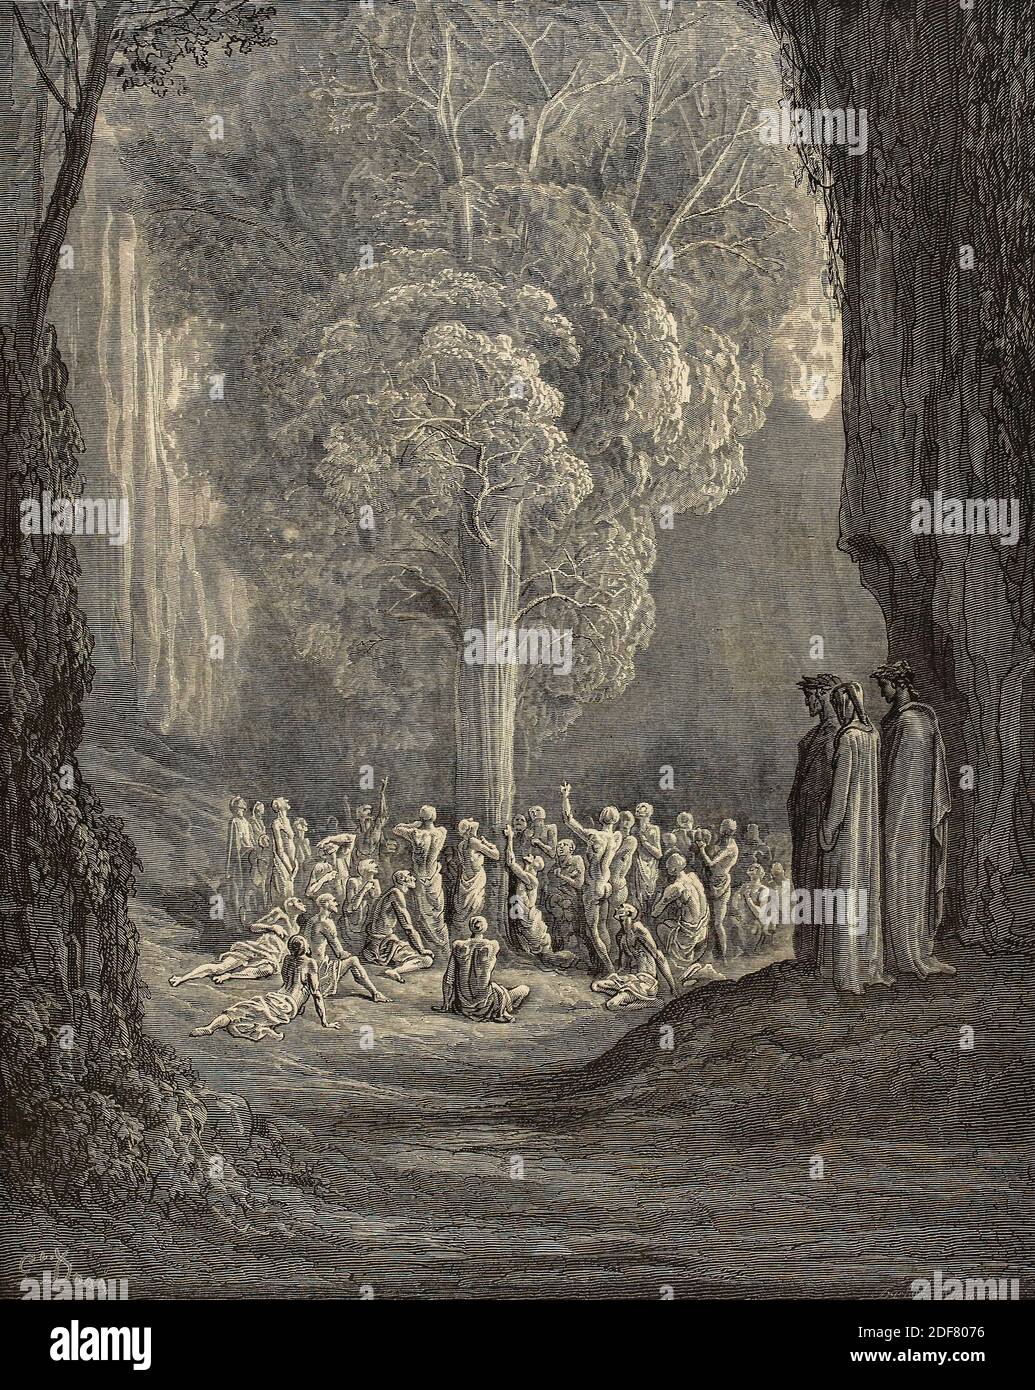 Dante - Divina Commedia - Purgatorio - Ilustración de Gustave Dorè - Canto XXIV - el árbol de los glotones Foto de stock